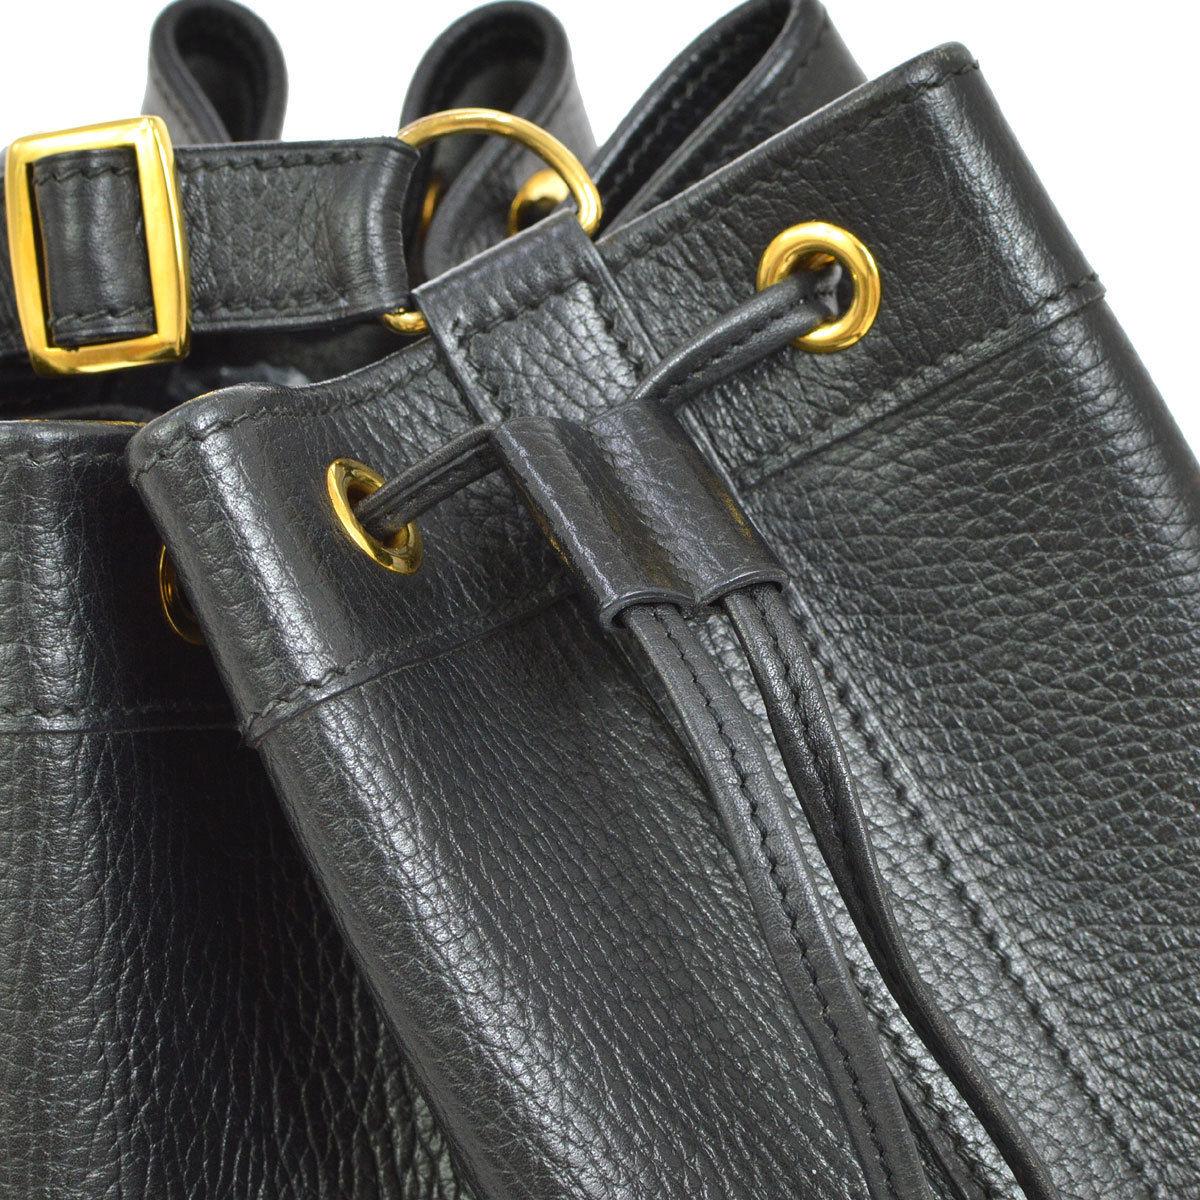 Hermes Black Leather Bucket Drawstring Carryall Shoulder Bag

Leather
Gold tone hardware
Drawstring closure
Suede lining
Made in France
Adjustable shoulder strap 9-14